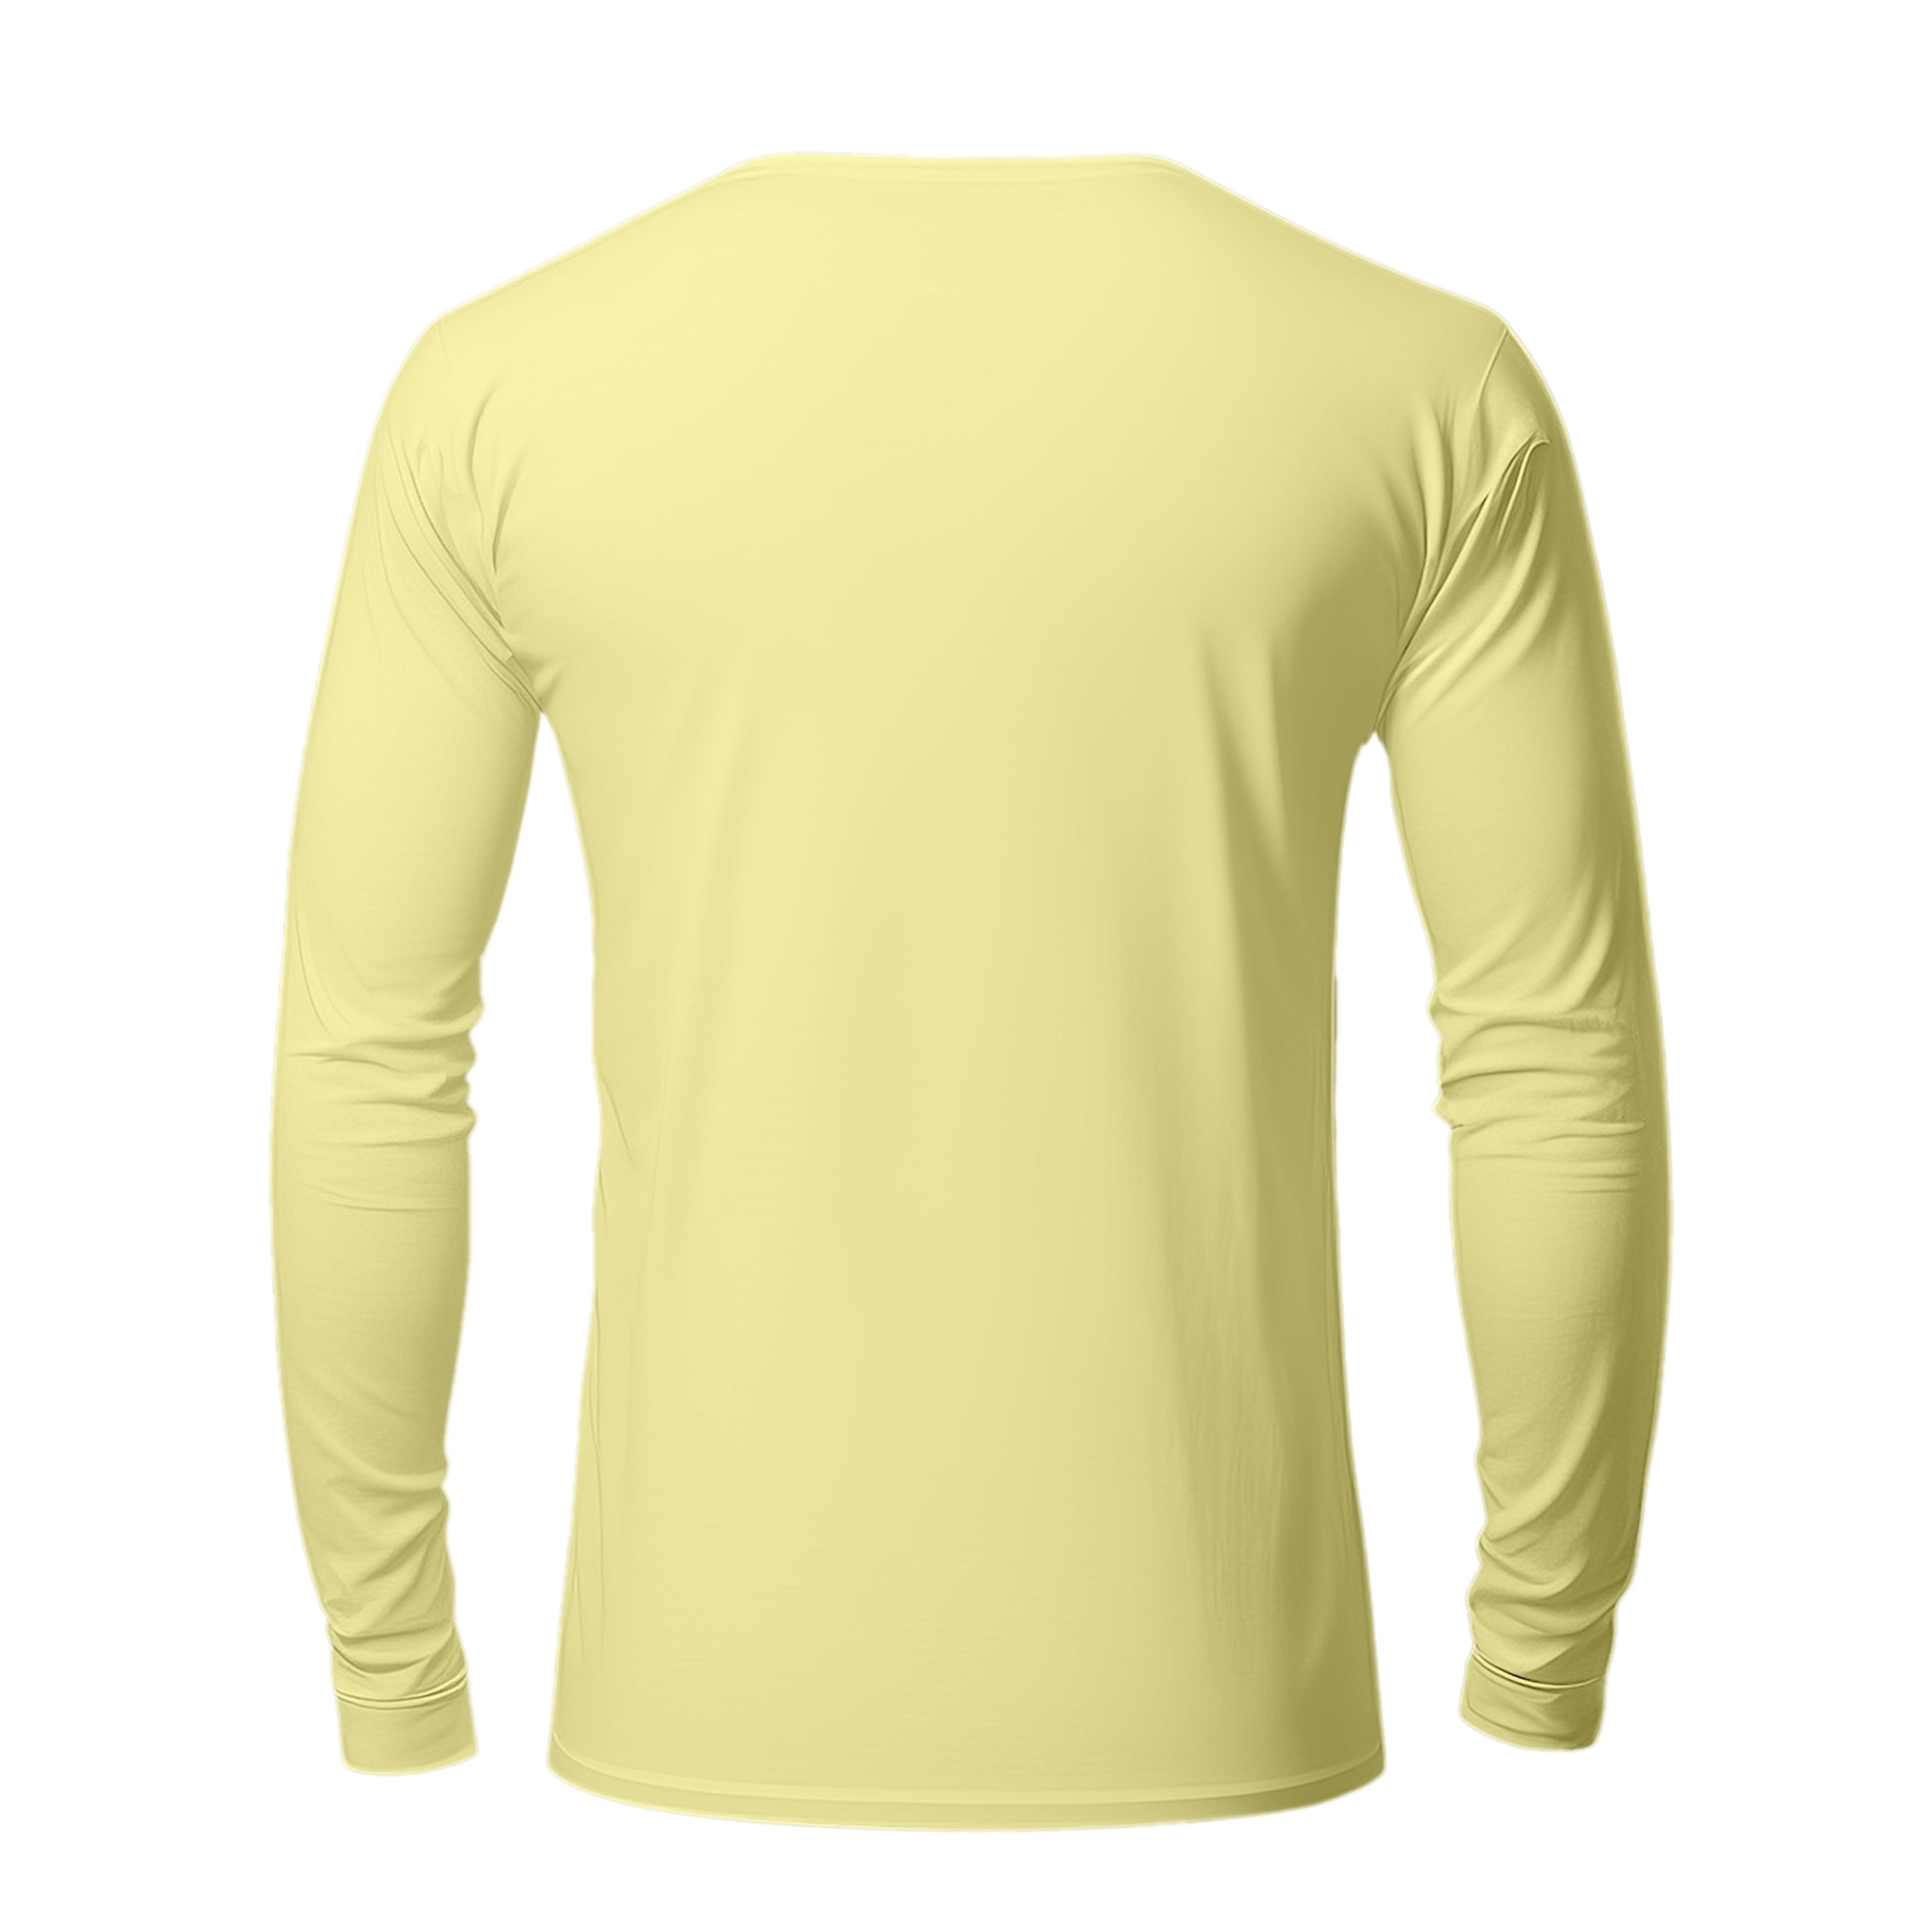 Full Soft Yellow T-Shirt For Men - FlyingCart.pk